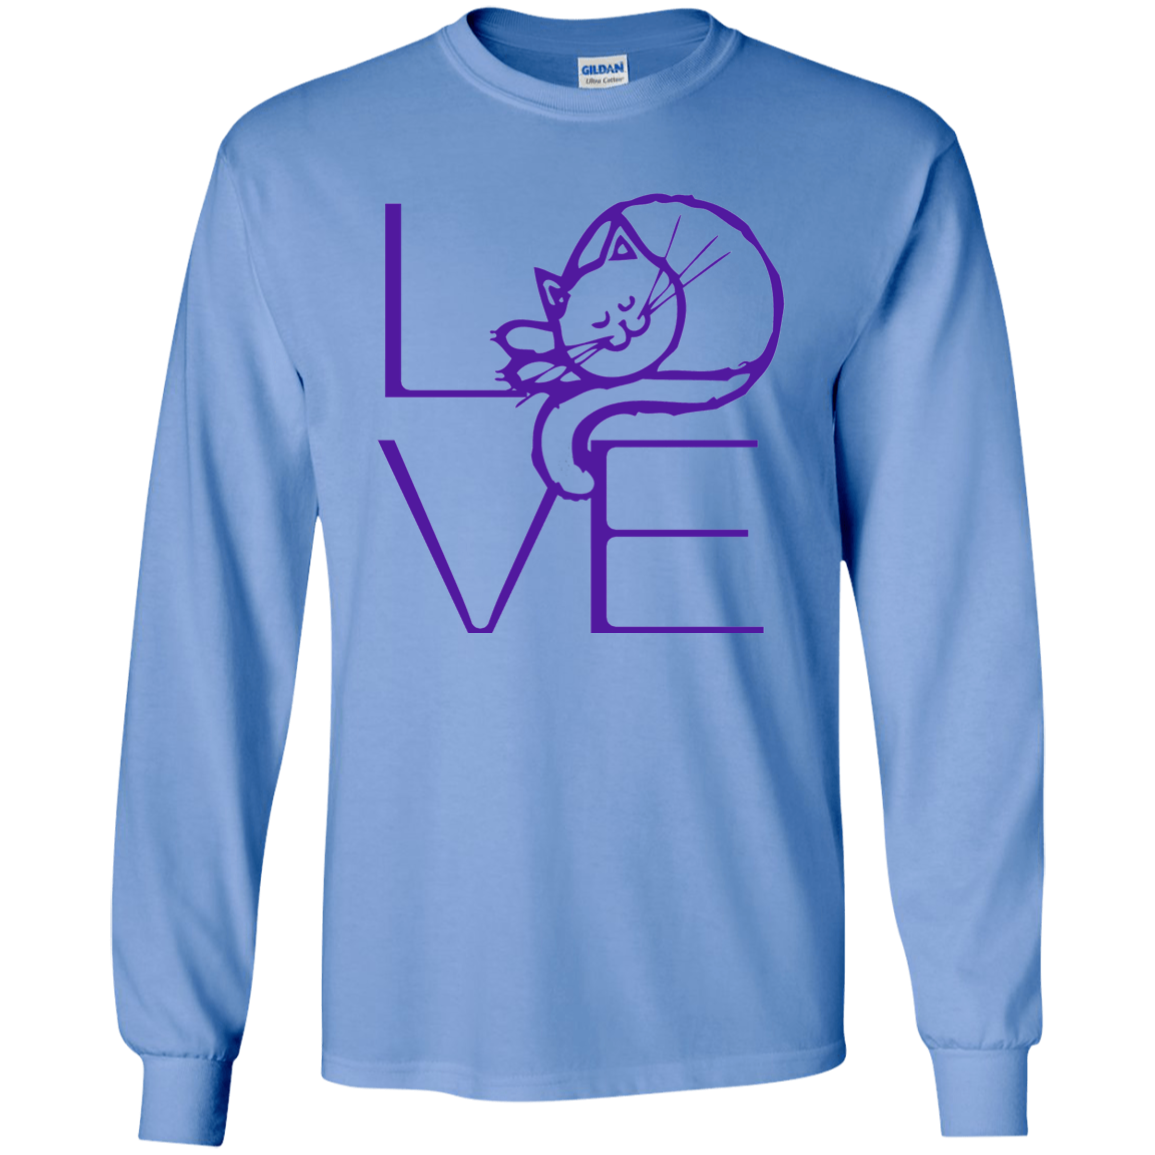 LOVE Cat LS Ultra Cotton T-Shirt